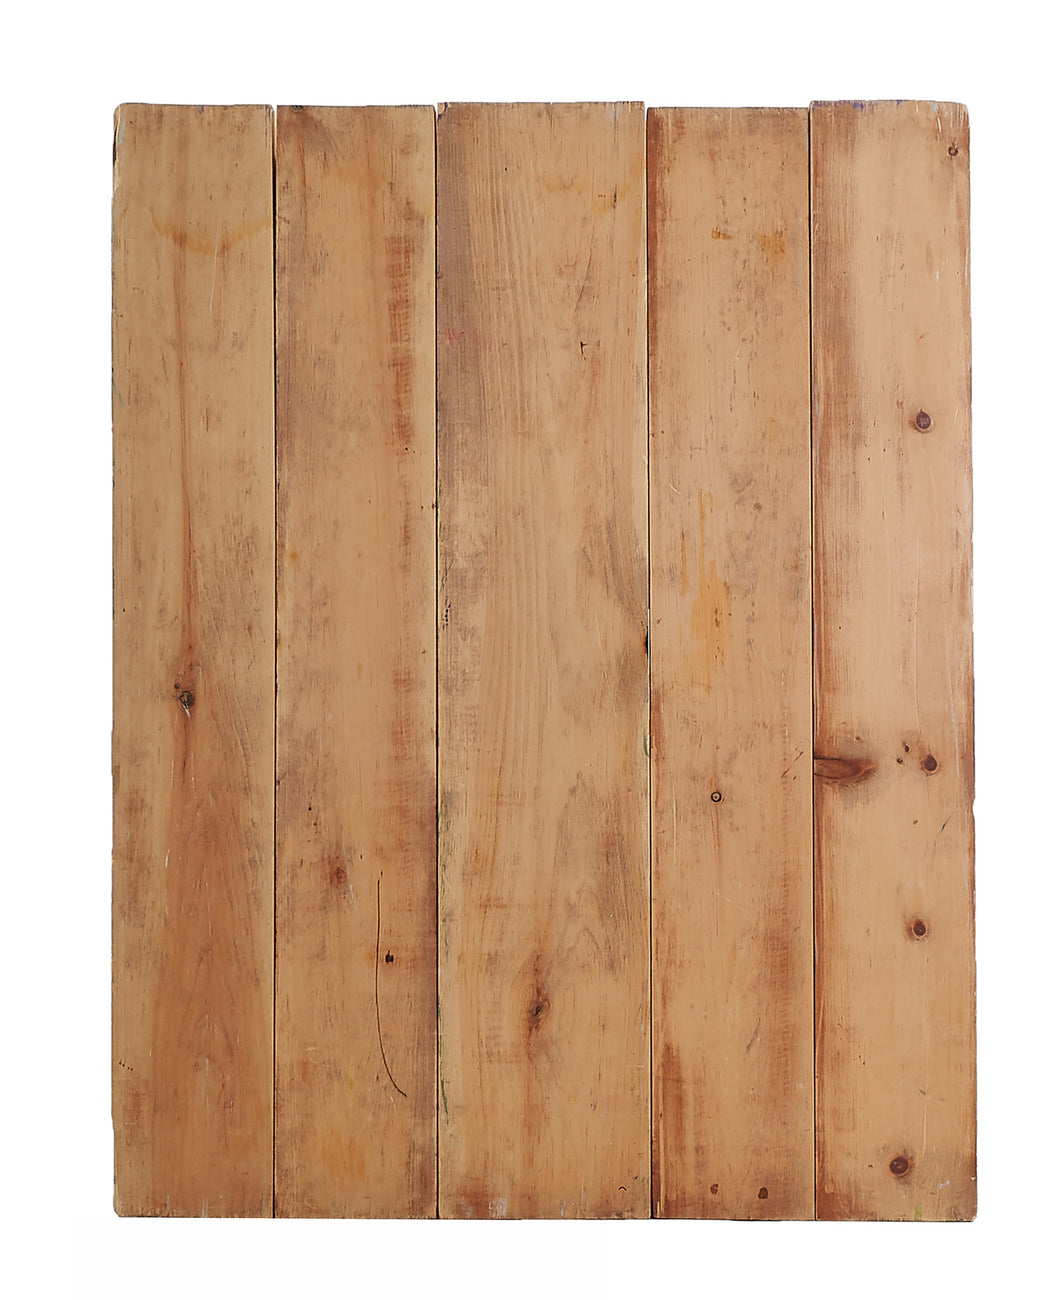 Lg Natural Wood Panels